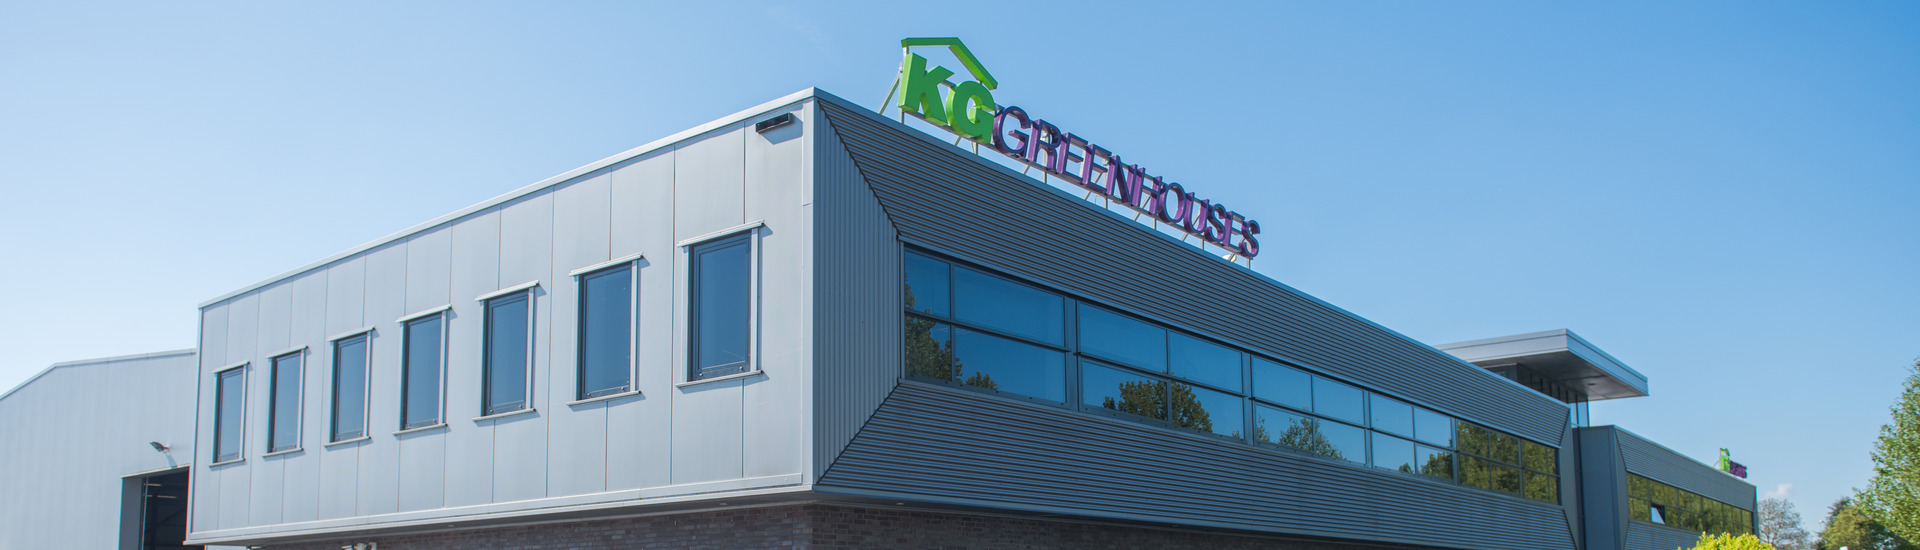 KG Greenhouses est un spécialiste mondial